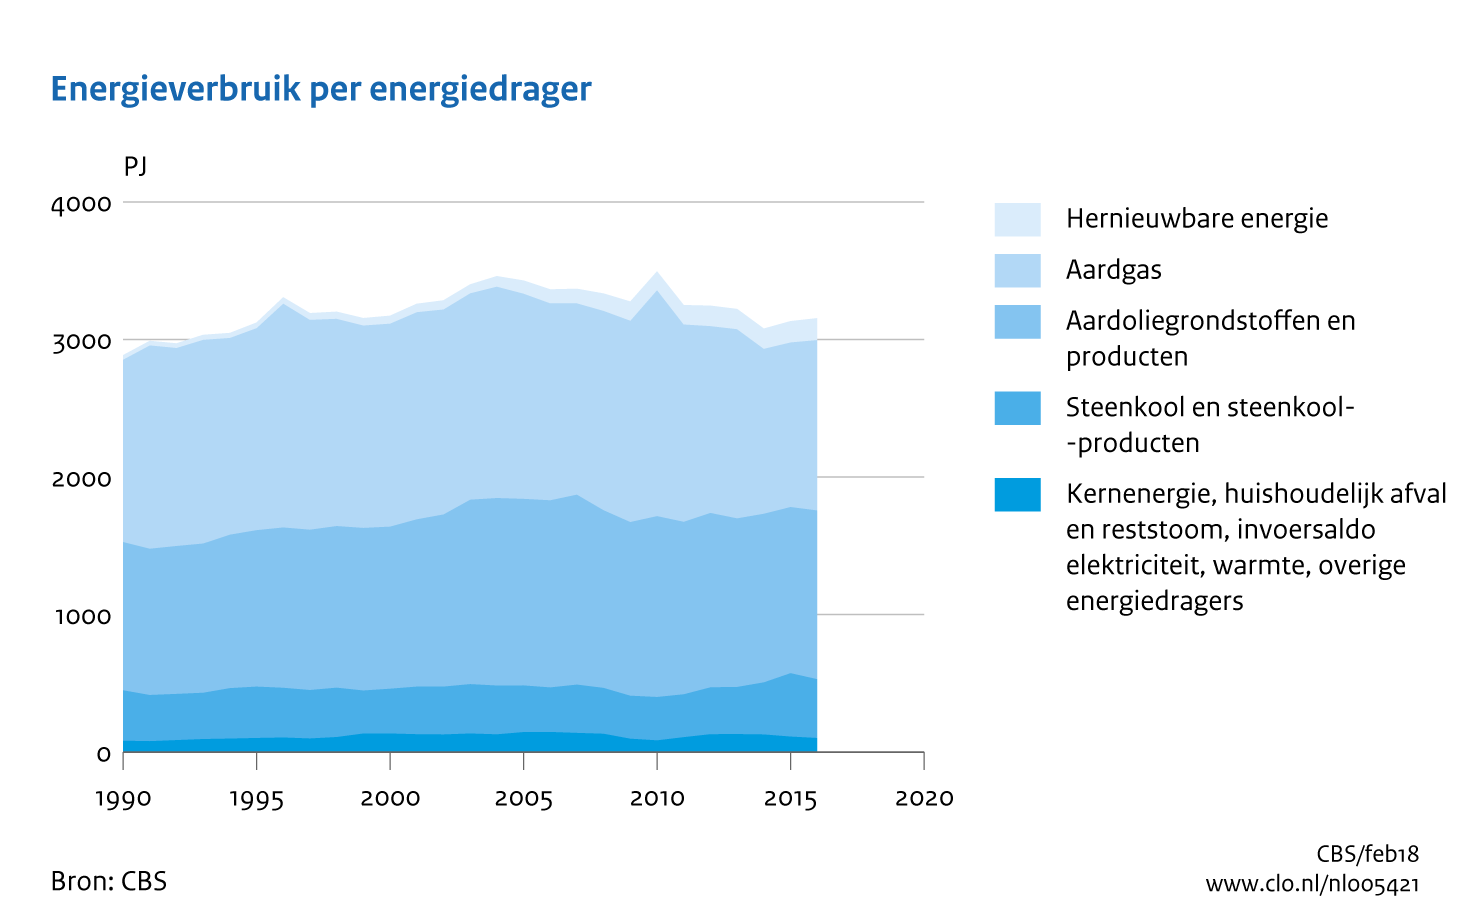 Figuur Energieverbruik per energiedrager 1990-2016. In de rest van de tekst wordt deze figuur uitgebreider uitgelegd.